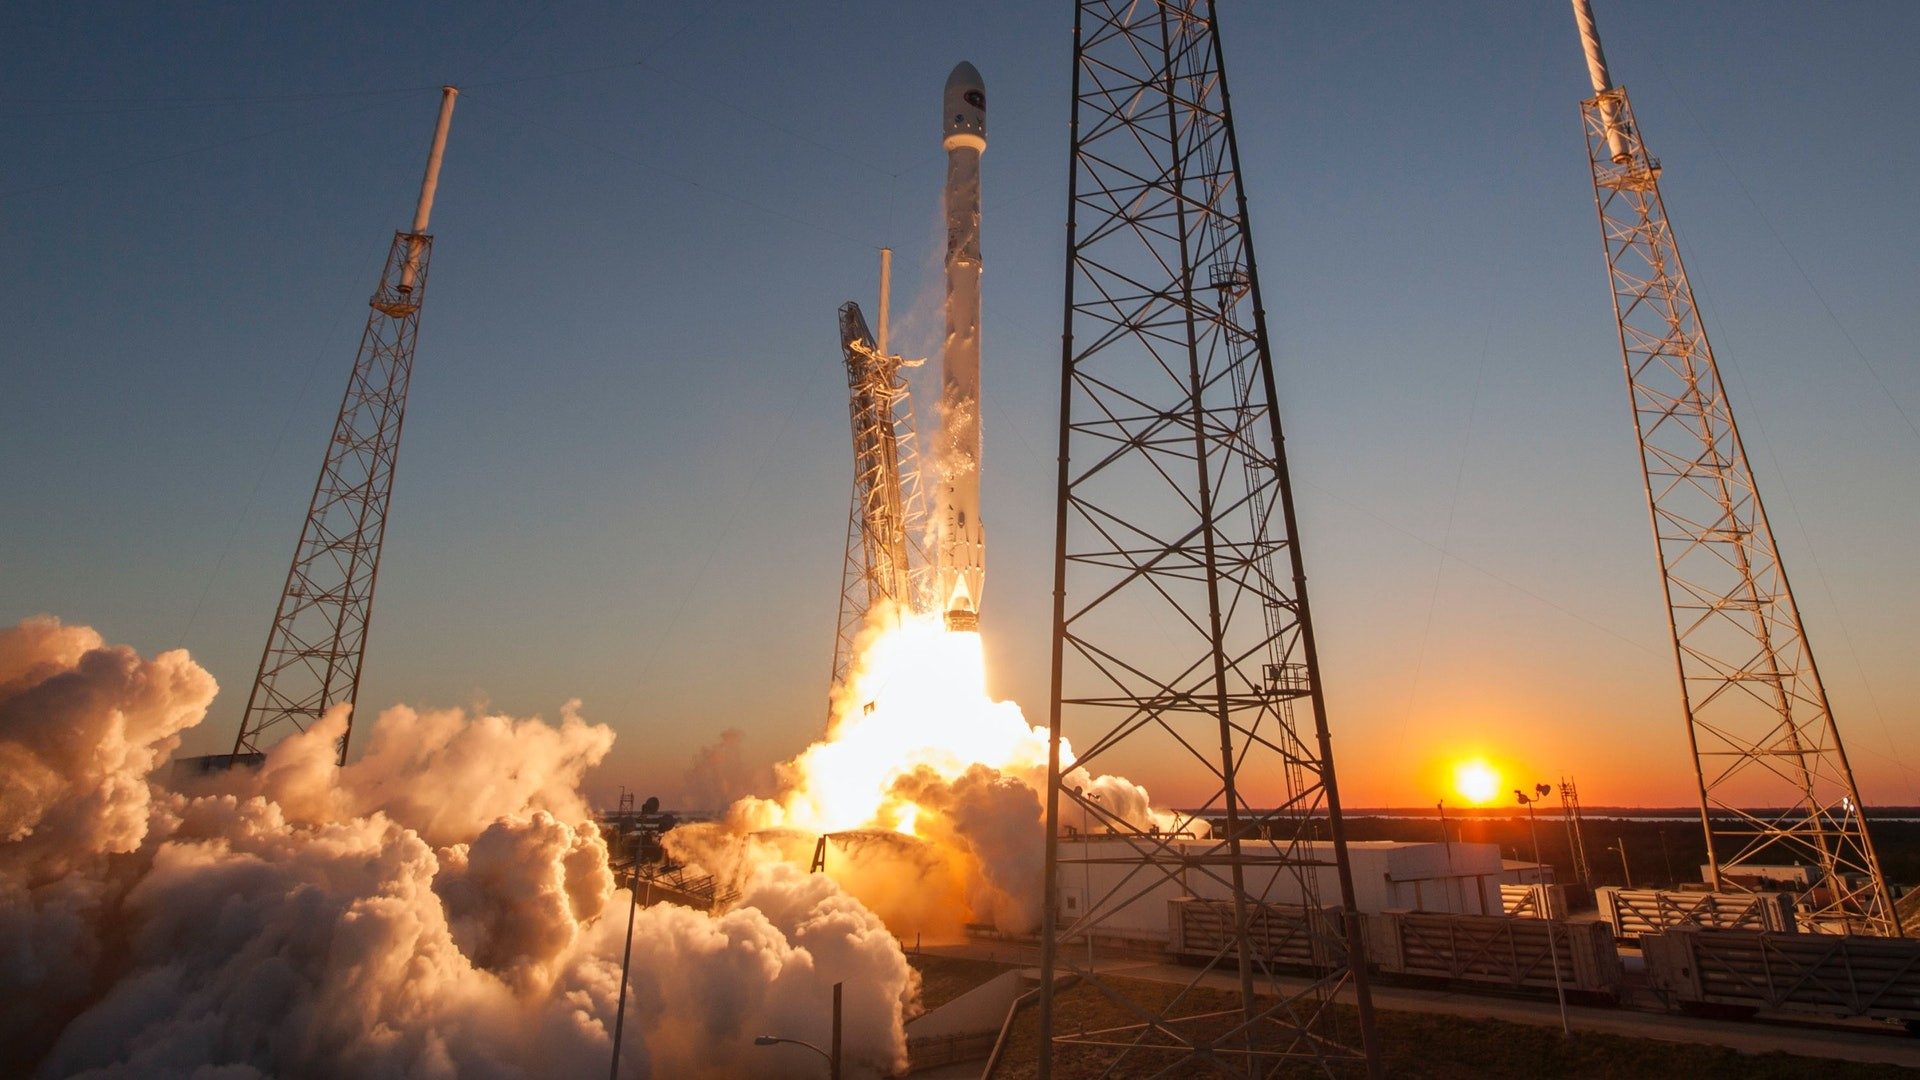 Start einer SpaceX Rakete im Sonnenuntergang mit viel Feuer und Qualm